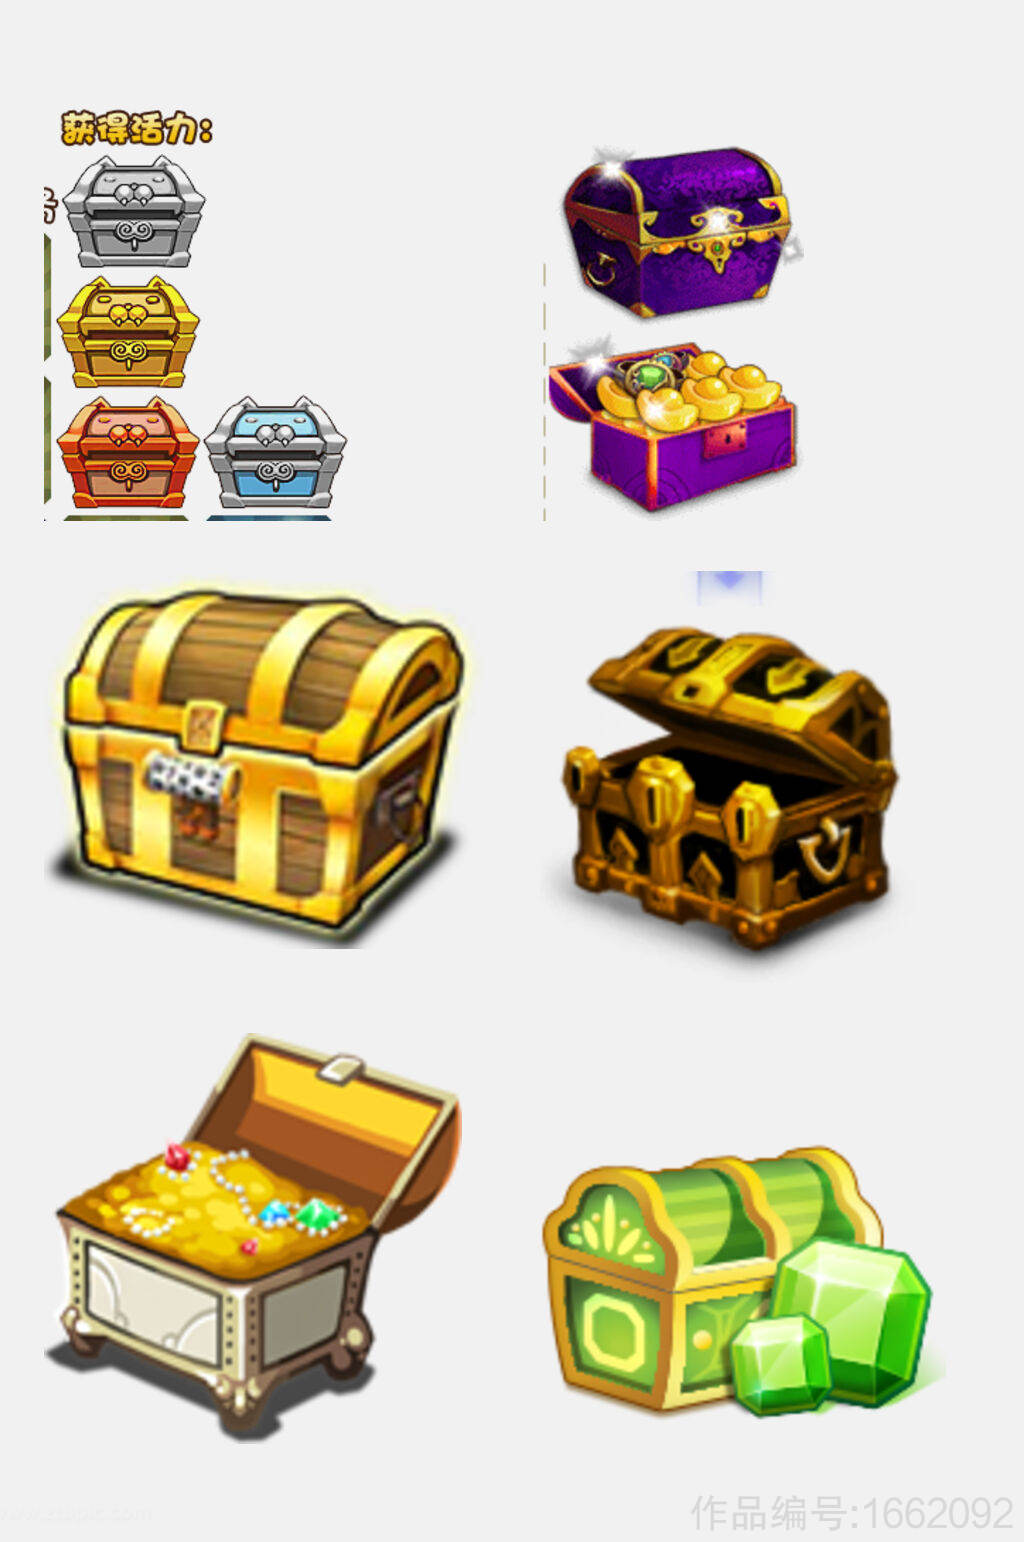 游戏宝箱宝藏箱海盗箱阿里巴巴设计元素素材